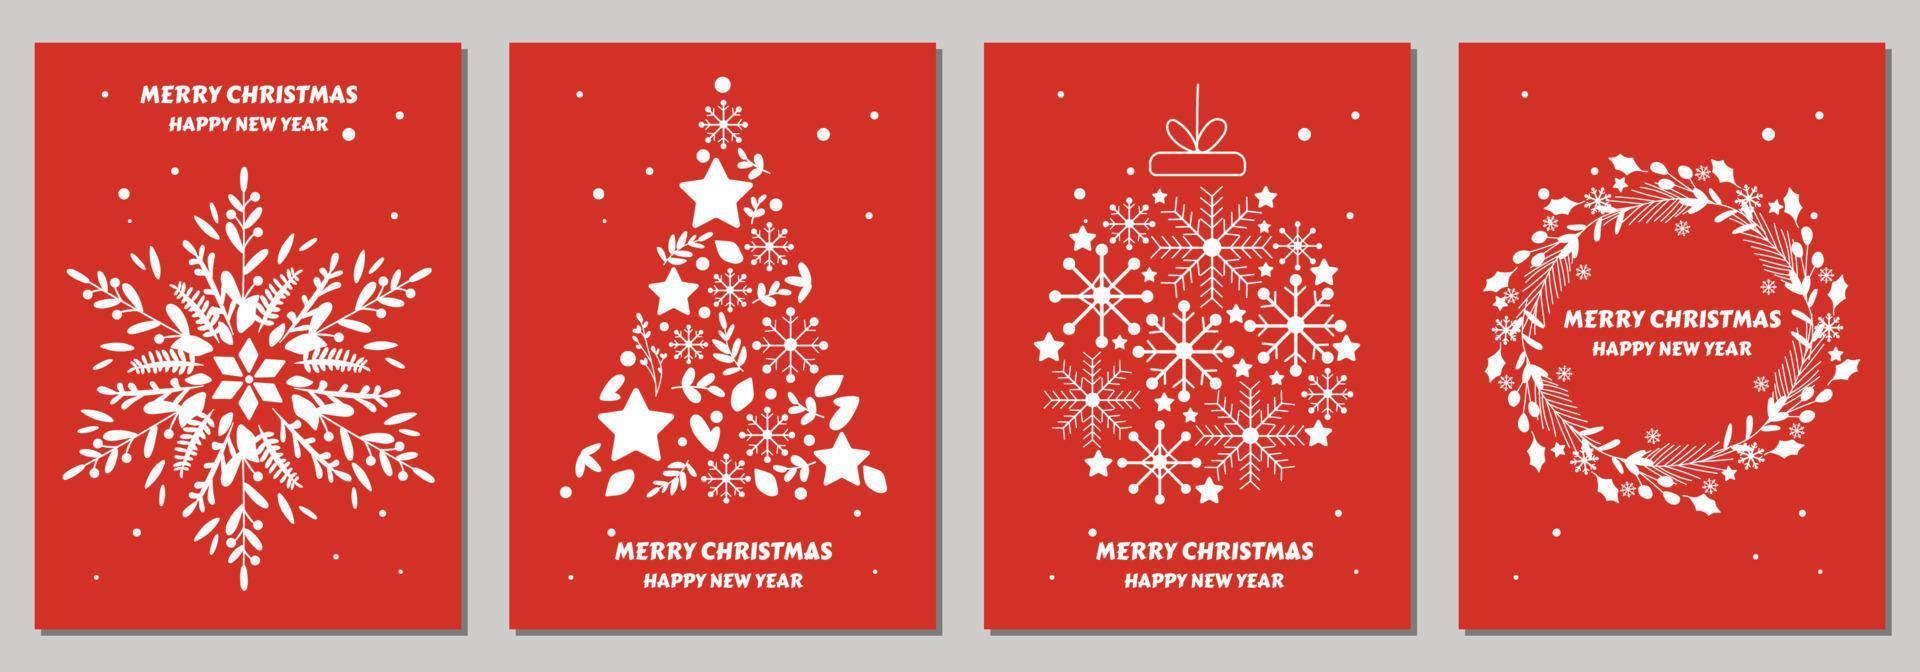 tarjetas navideñas con feliz navidad con adornos navideños y diseño tipográfico. ilustración vectorial color rojo y blanco vector